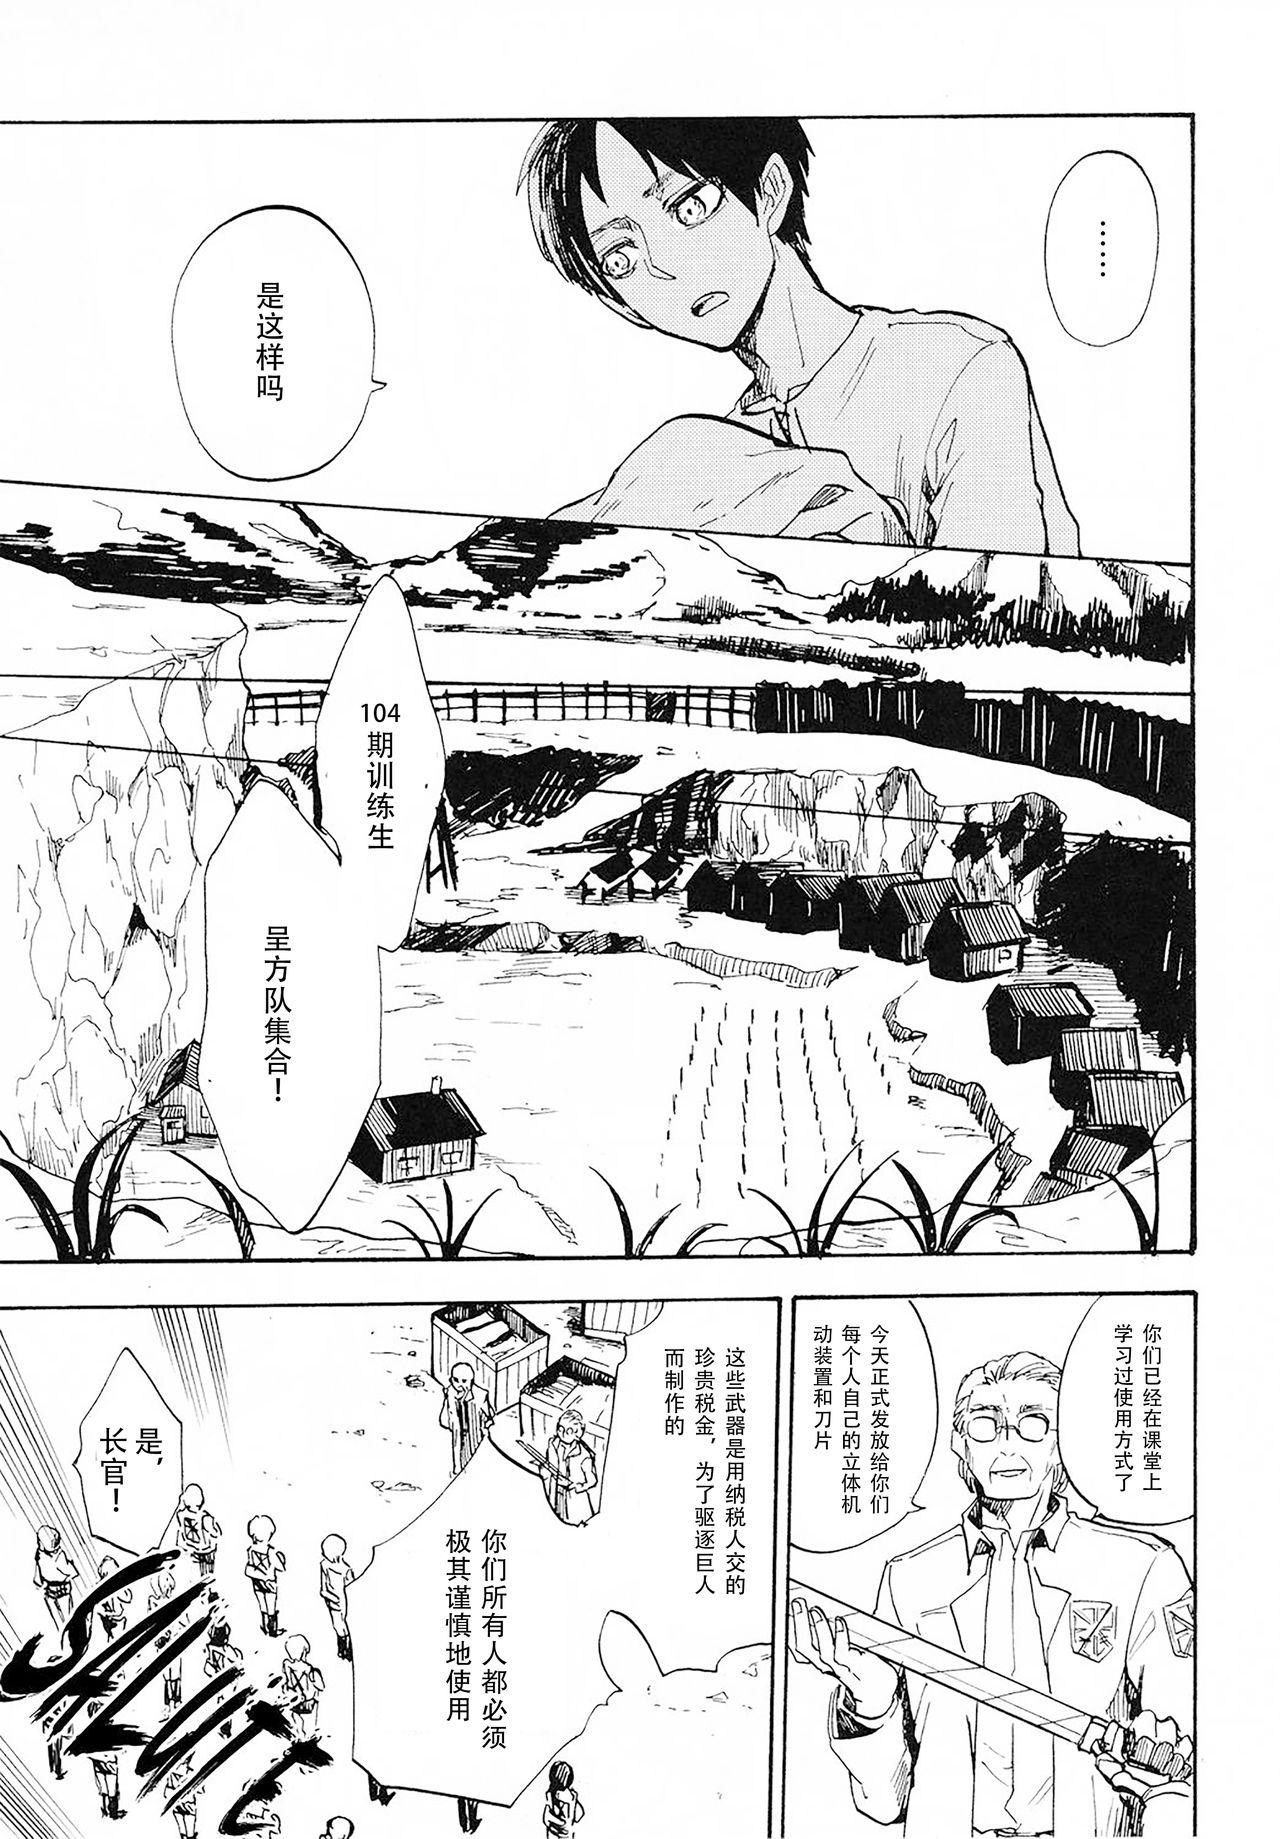 Footworship (C85) [Senkan AA (Ahiru)] Shonen Knife (Shingeki no Kyojin)「少年的刀」(Chinese)[看海汉化组] - Shingeki no kyojin | attack on titan Monster Cock - Page 7